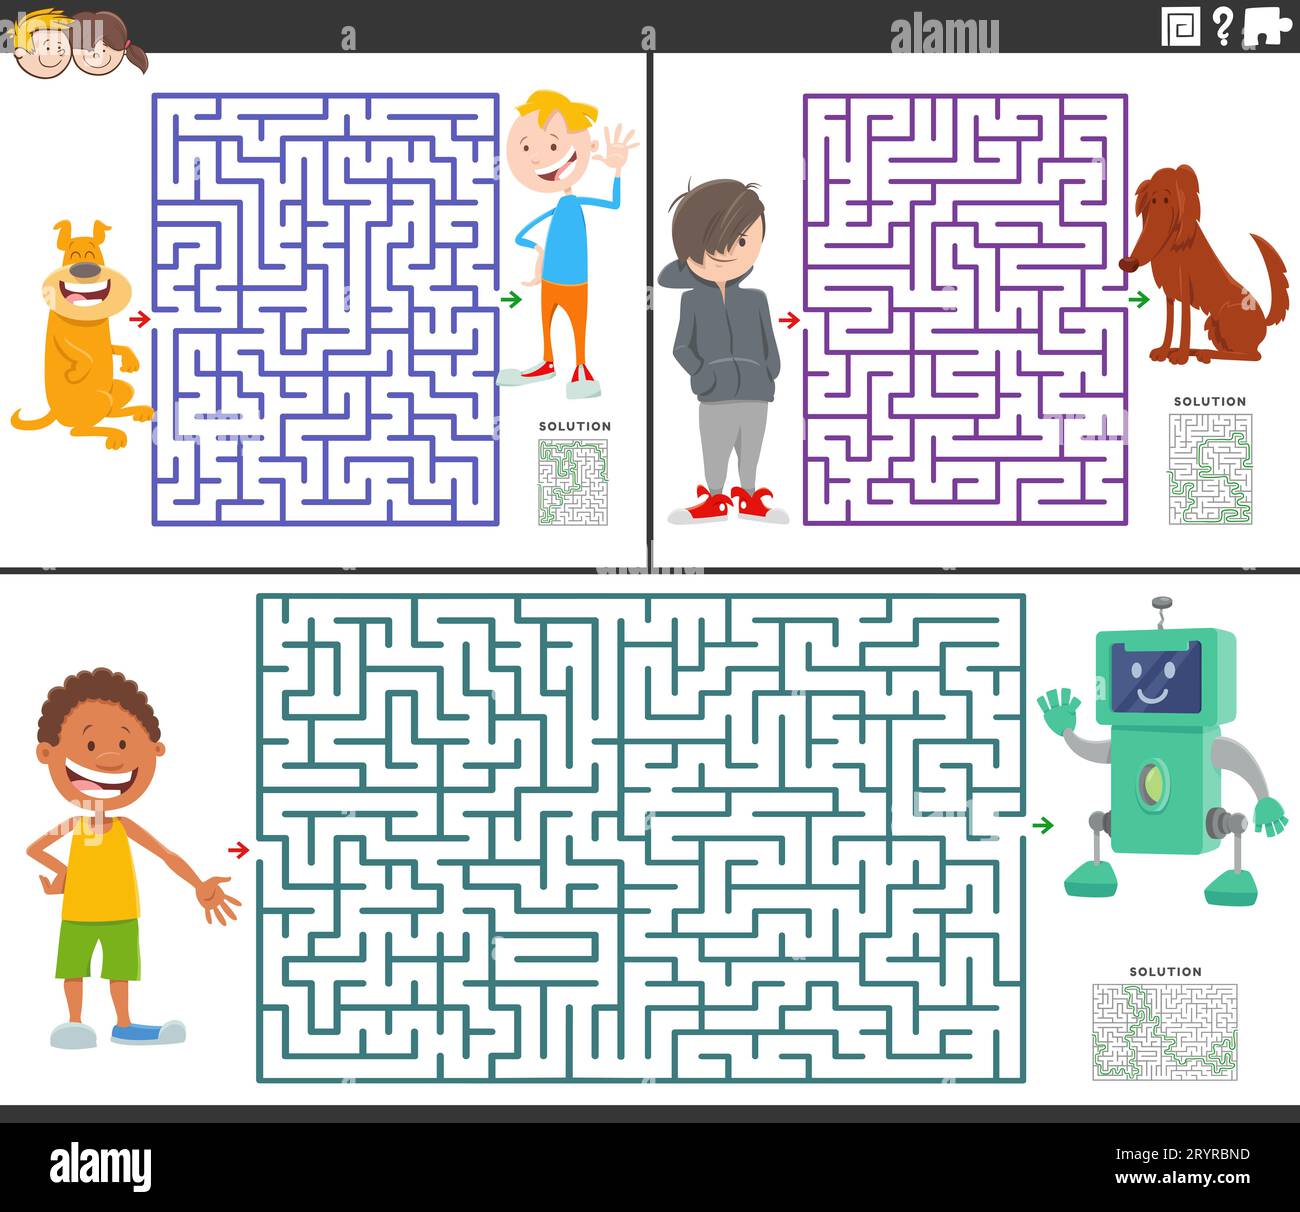 Cartoon-Darstellung von pädagogischen Rätselspielen im Labyrinth mit Kindern und ihren Haustieren und Spielzeug Stockfoto